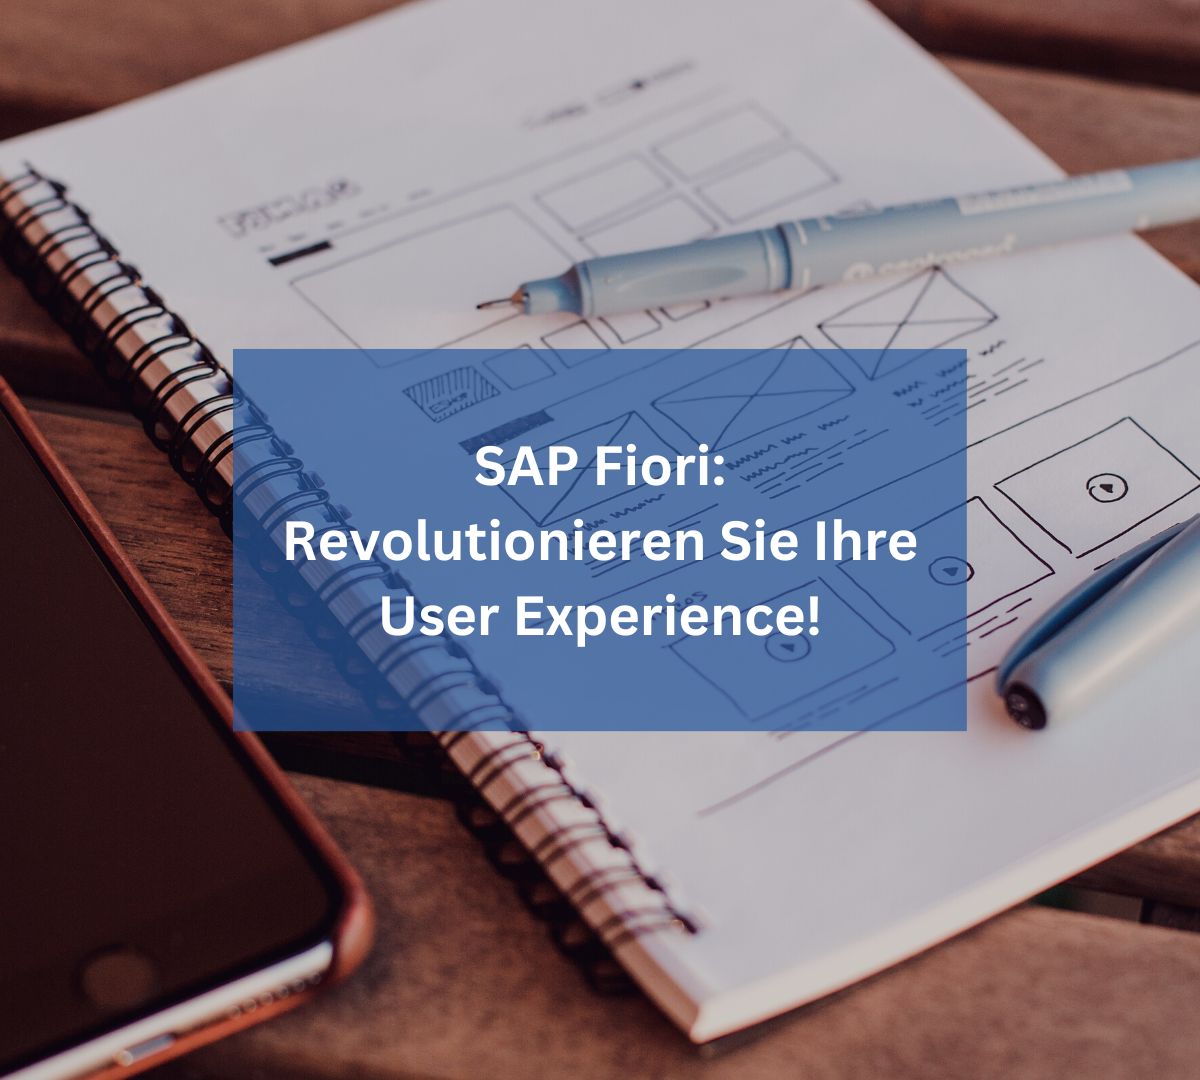 SAP Fiori: Revolutionieren Sie Ihre User Experience mit modernen und anwenderfreundlichen Apps